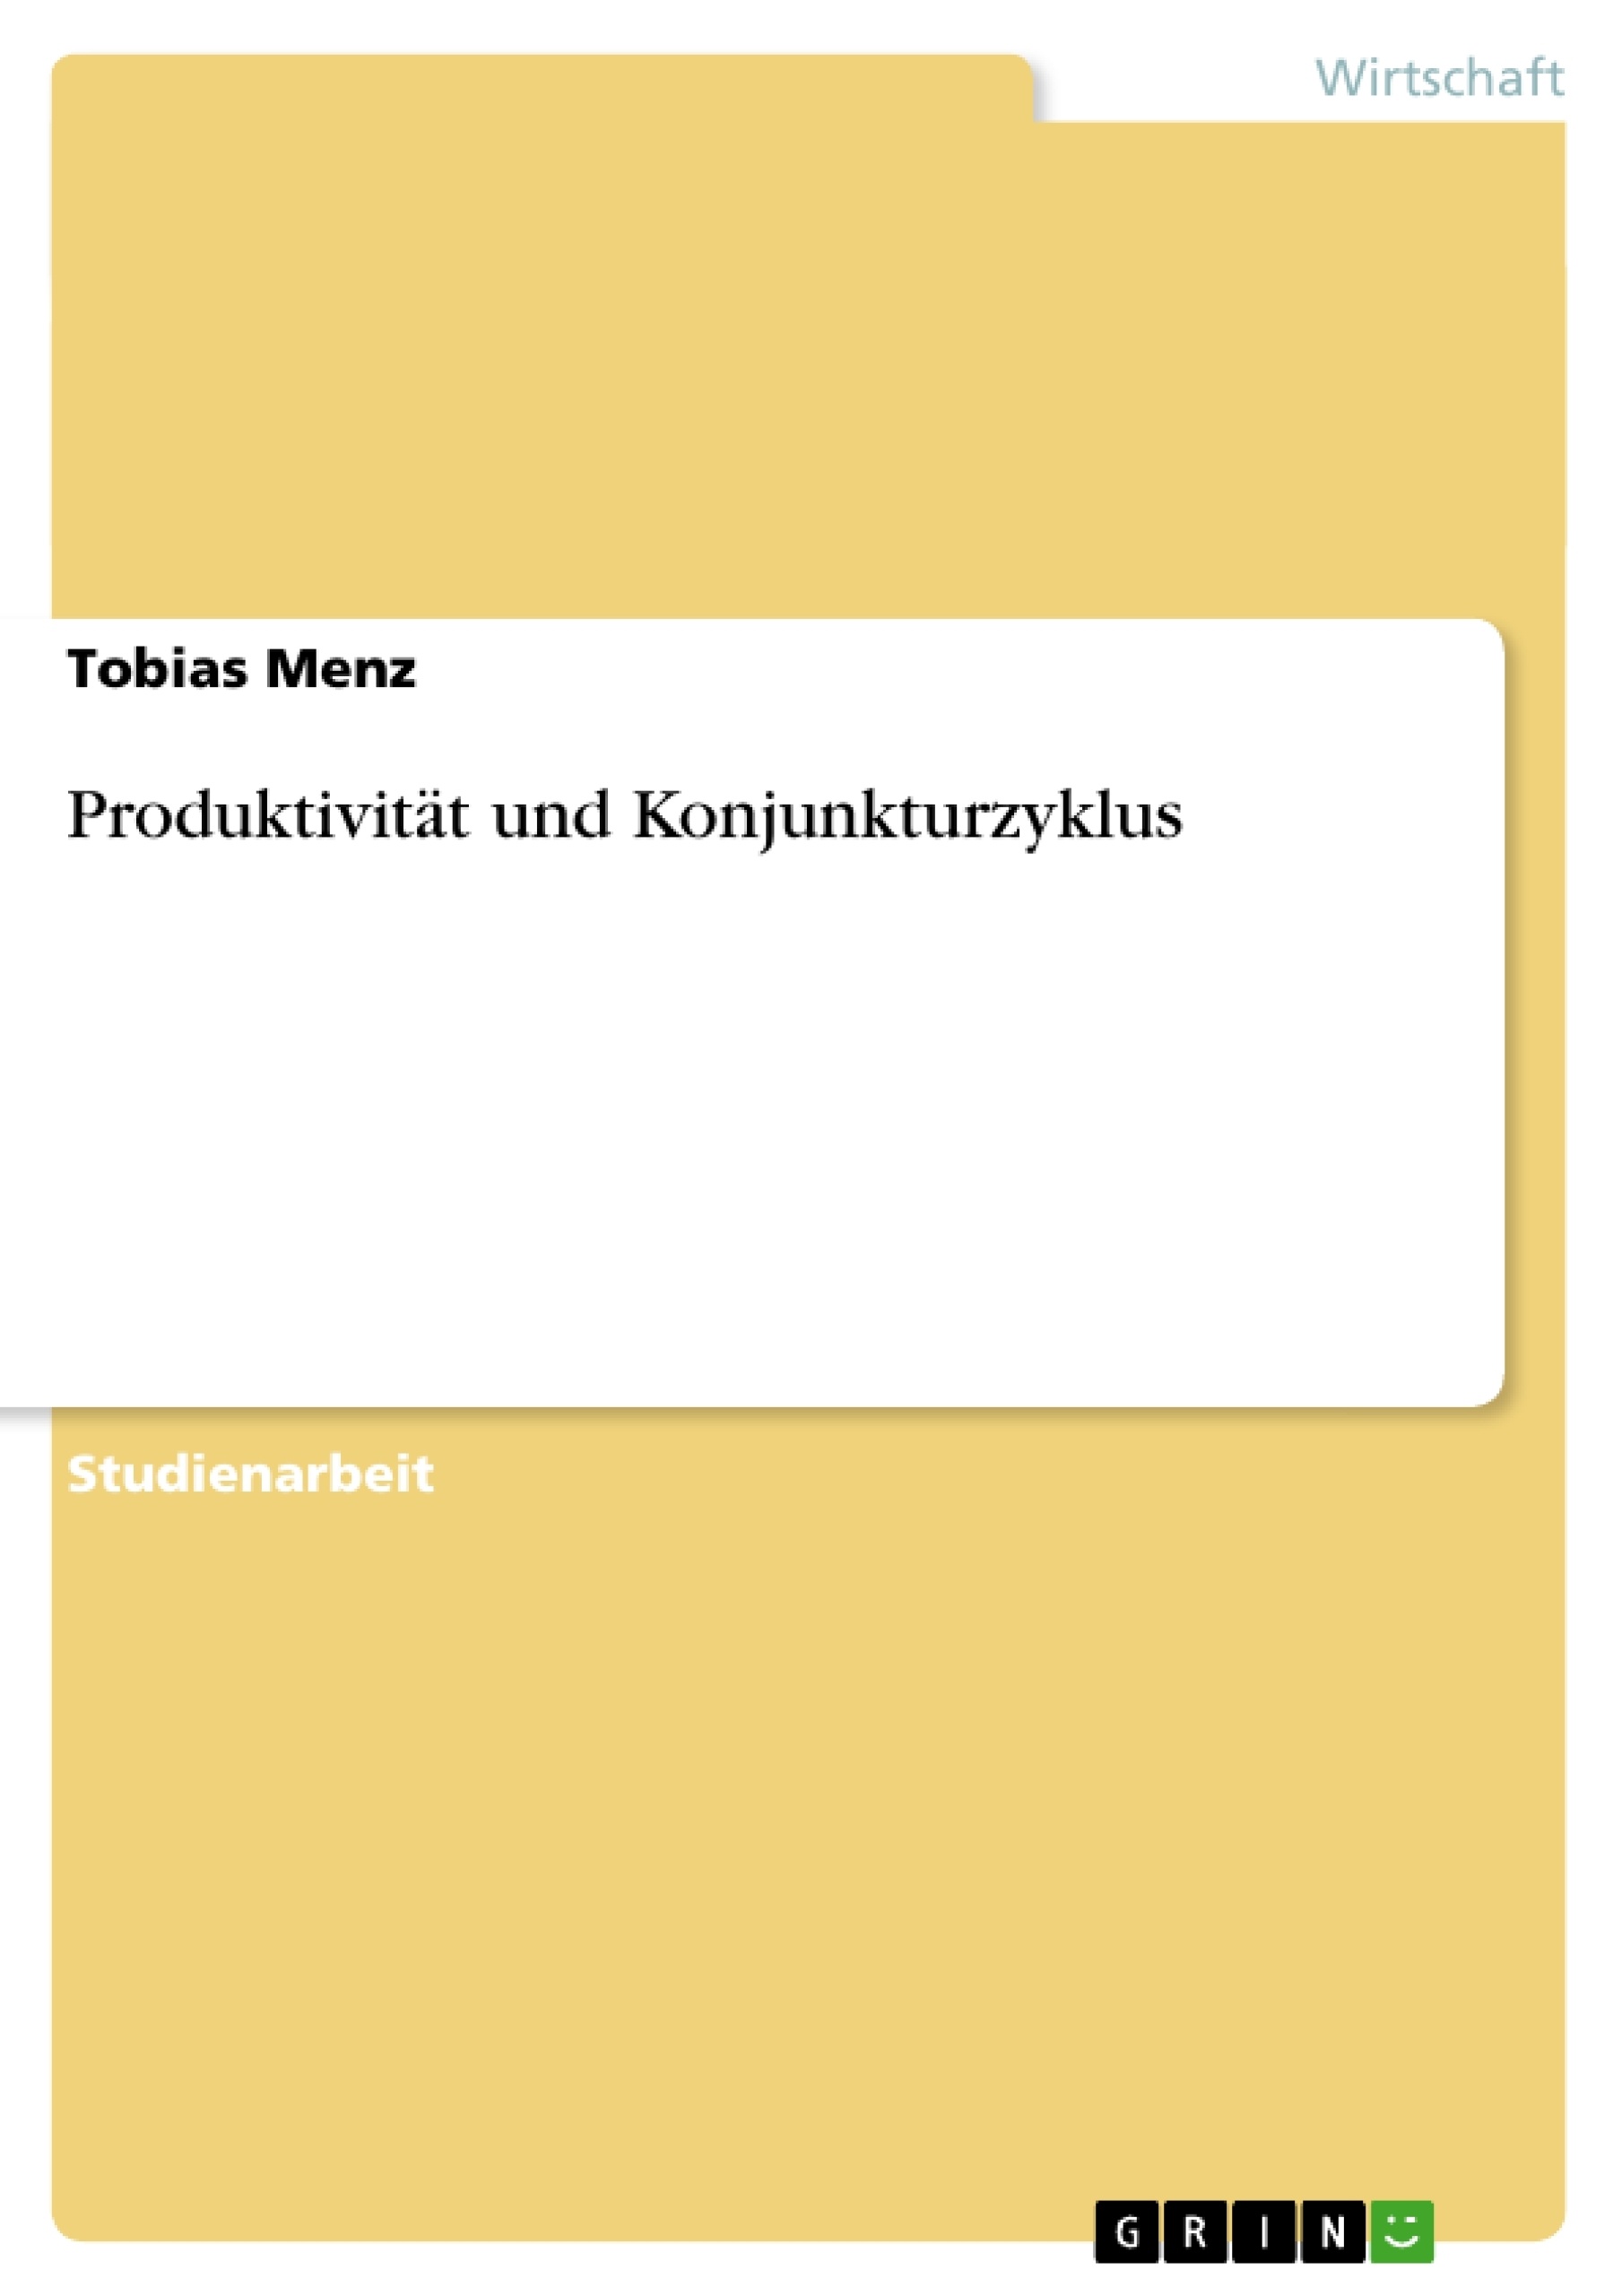 Title: Produktivität und Konjunkturzyklus